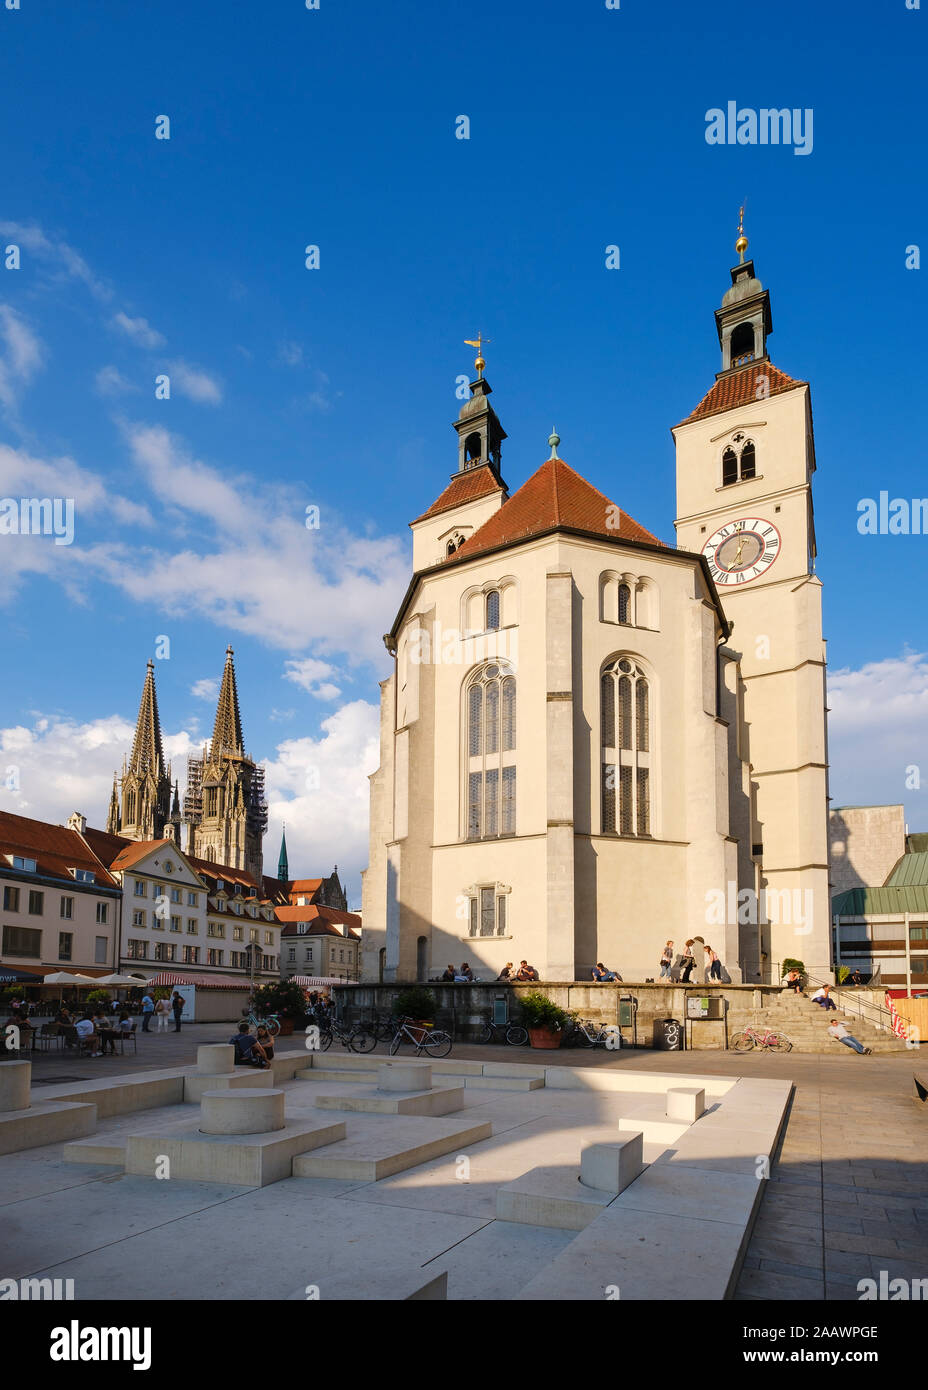 Von außen gegen Himmel am Neupfarrplatz Neupfarrkirche, Altstadt, Regensburg, Oberpfalz, Bayern, Deutschland Stockfoto